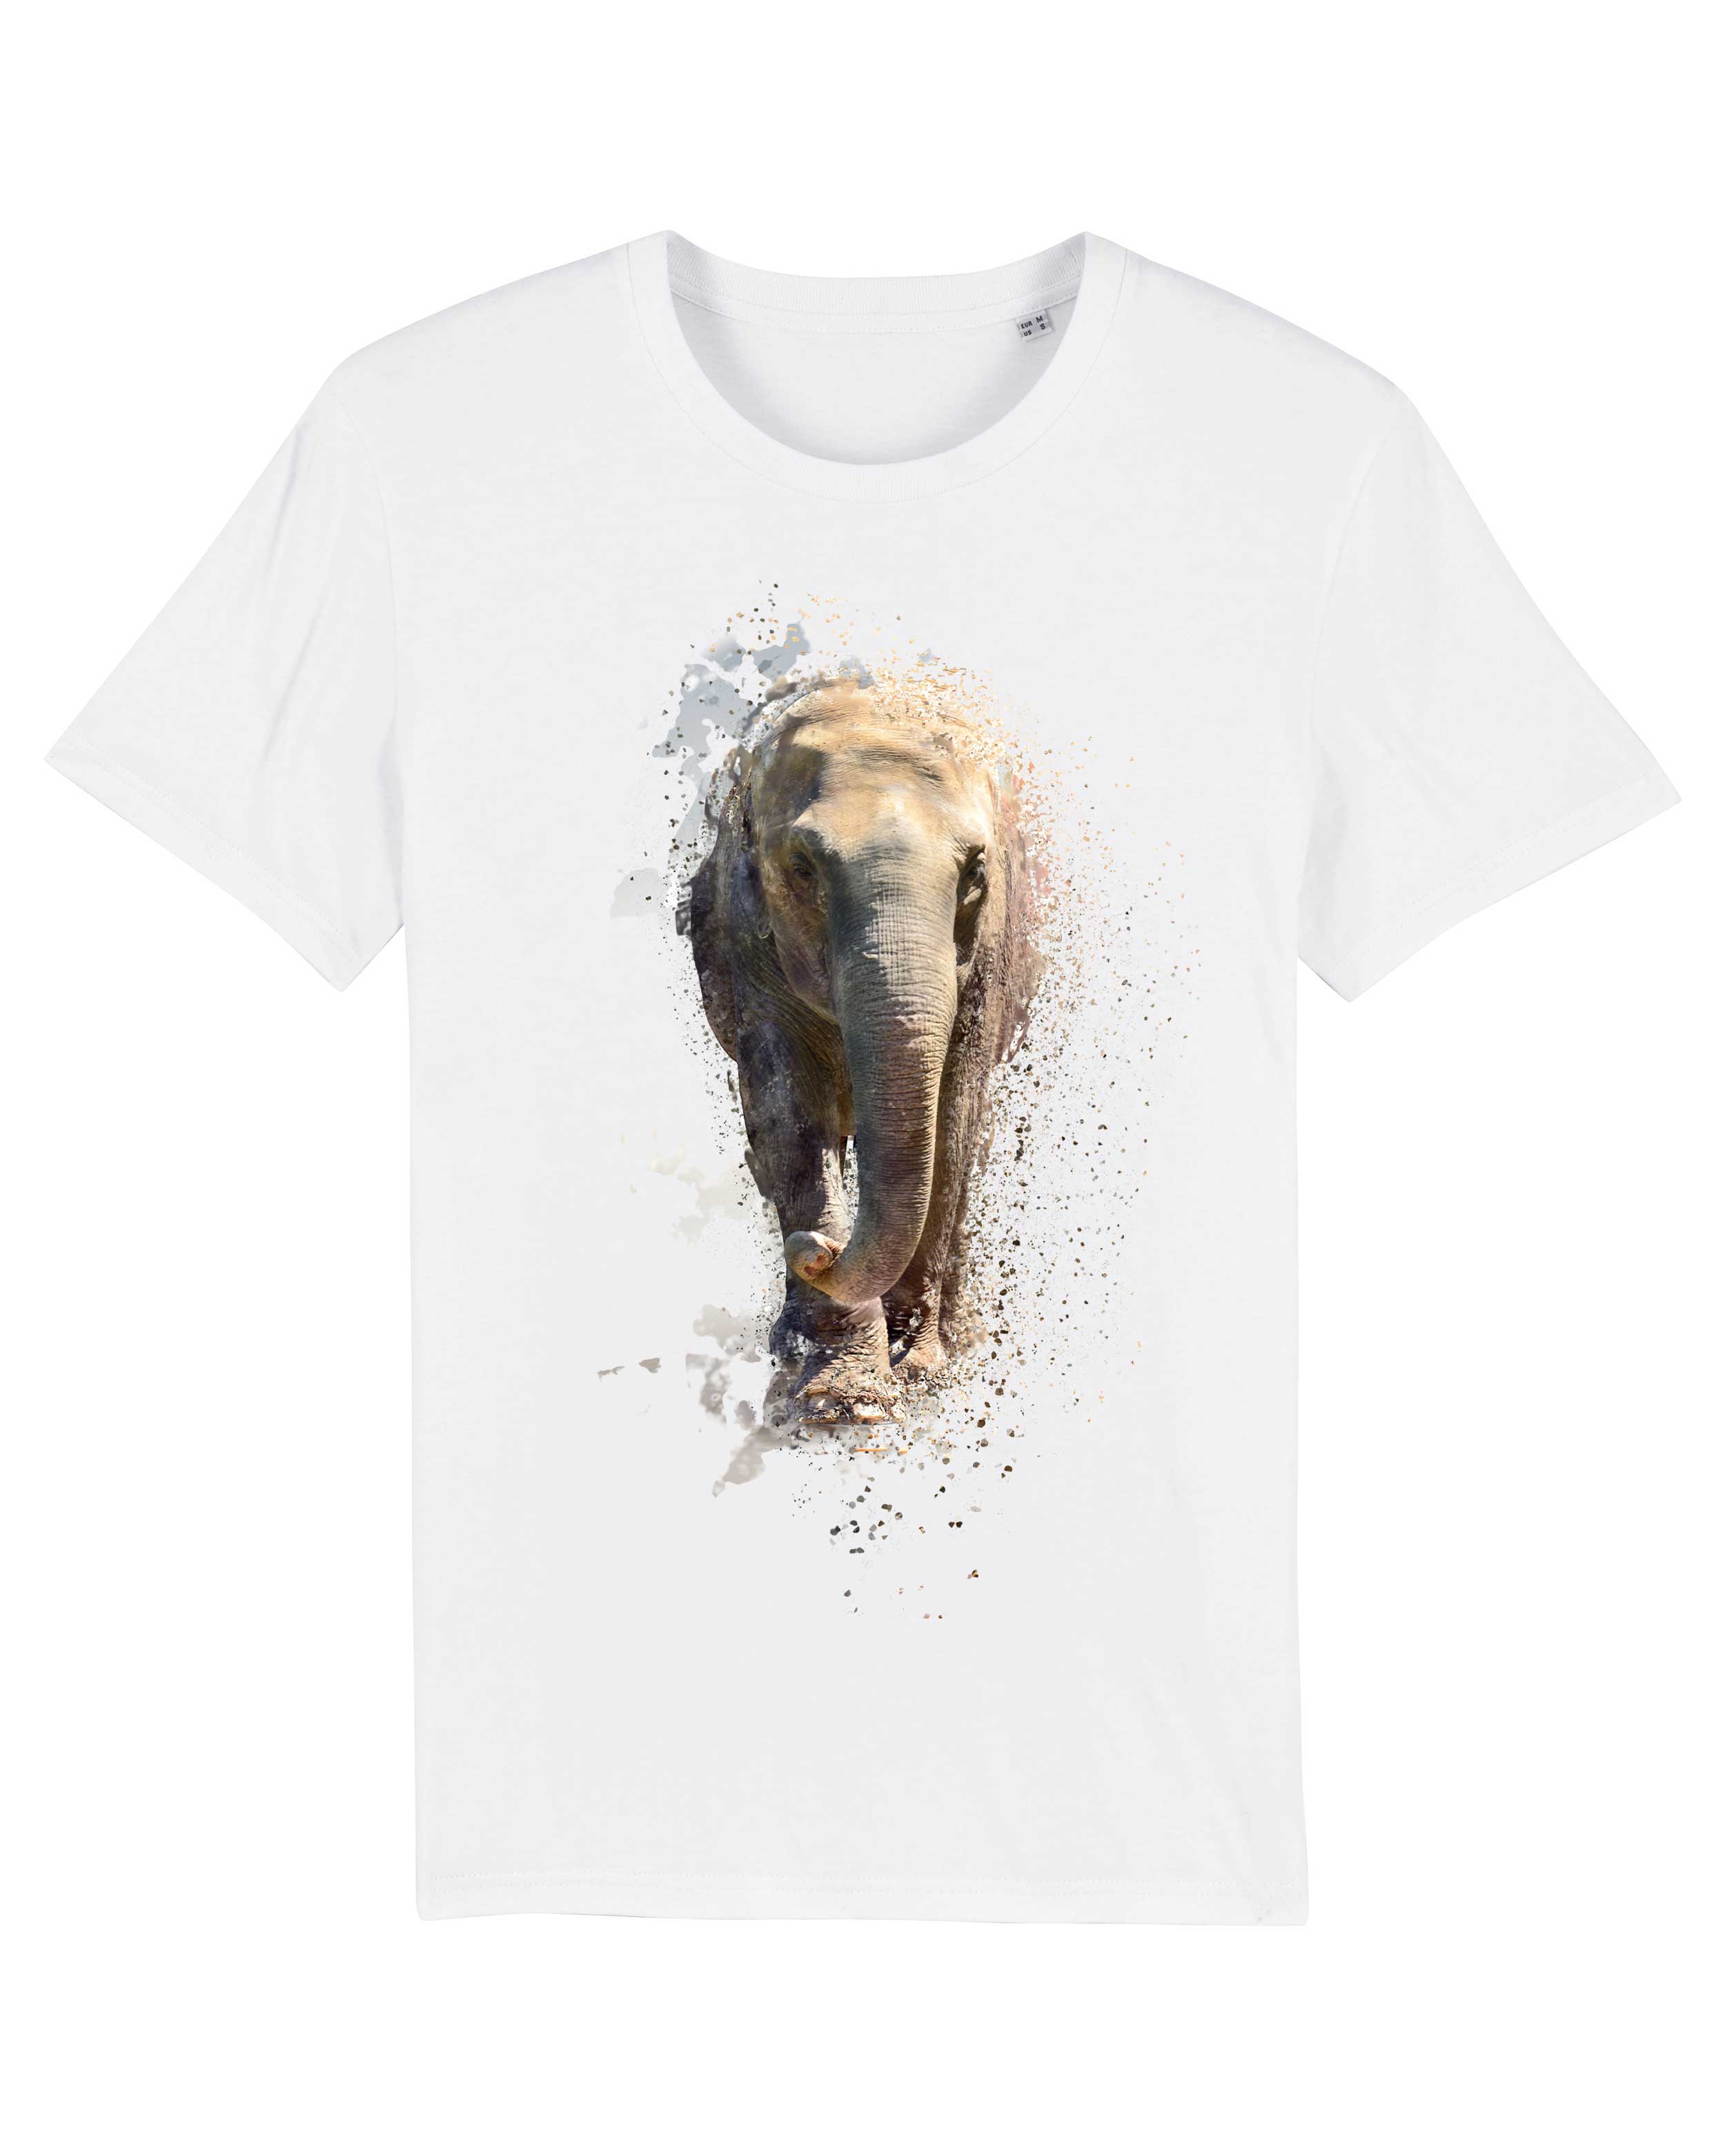 T-Shirt Elefant Illustration weiss Tiere, Bio-Baumwolle, Unisex, Damen, Kids